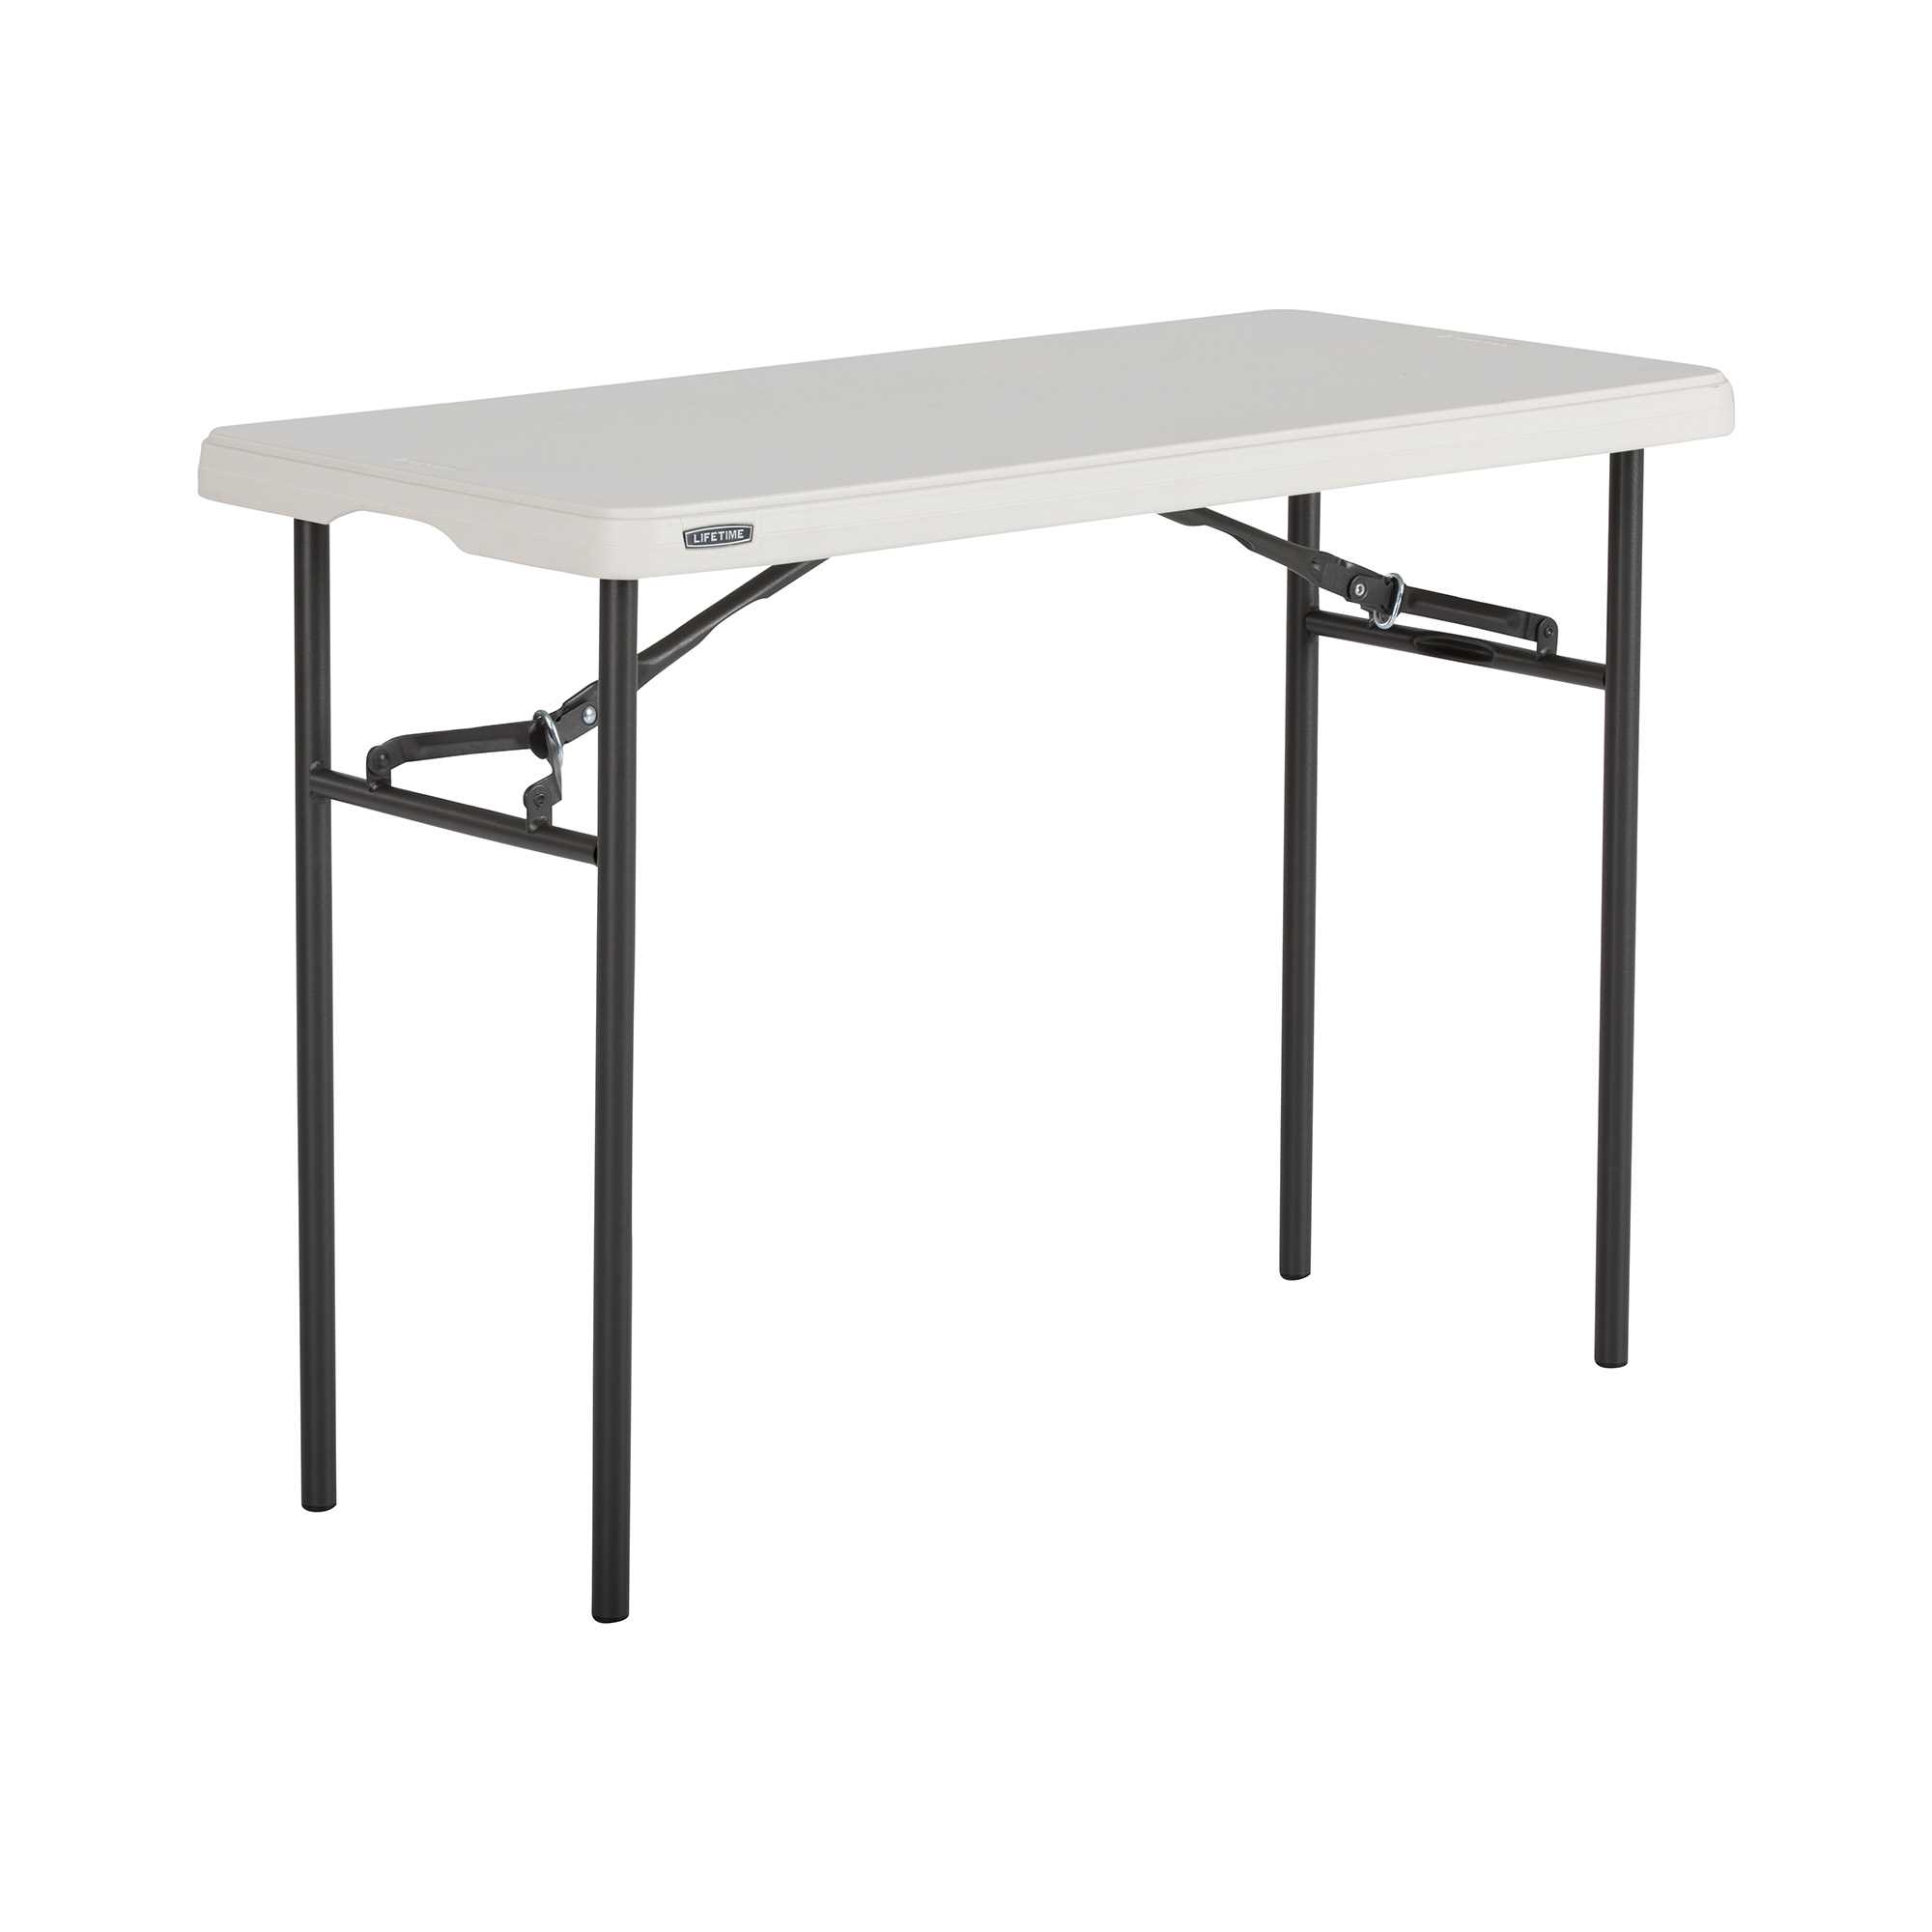 3.2ft Rectangular Folding Table 100x50 cm / 4 people / NESTING light commercial